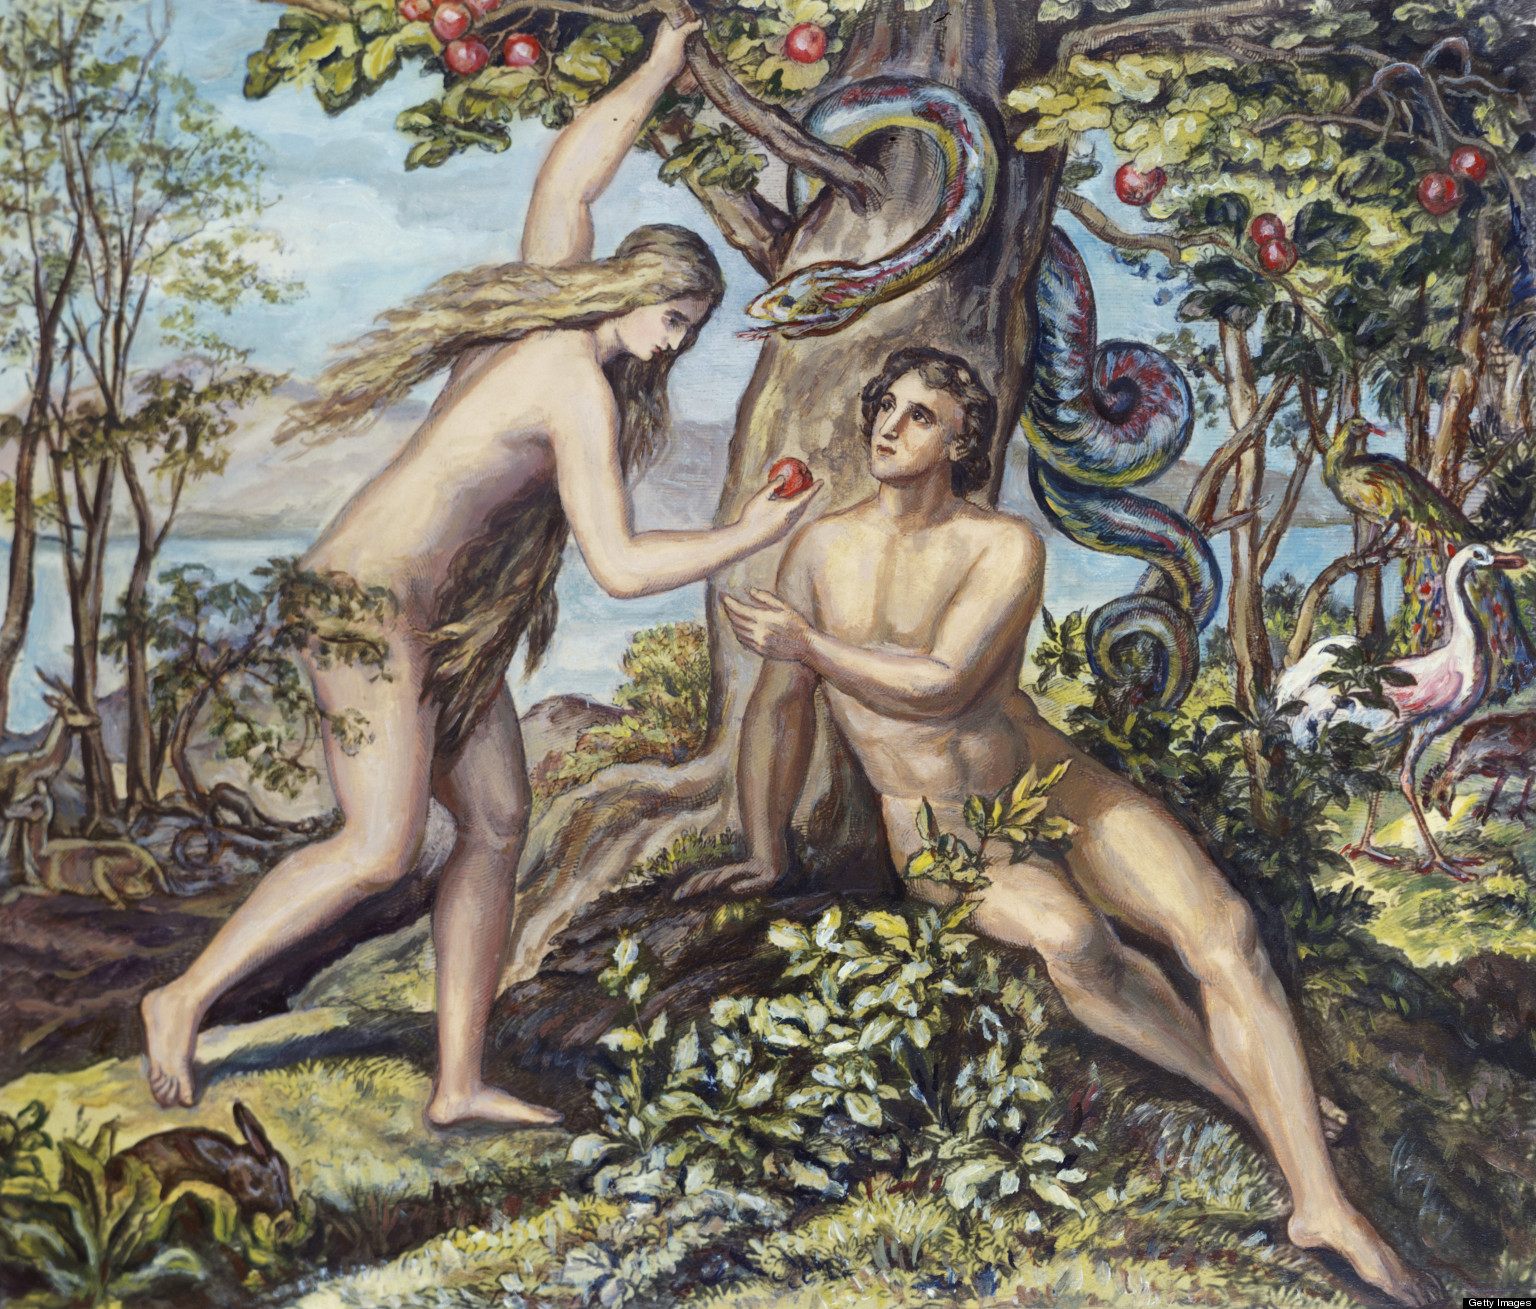 Adam &Eve